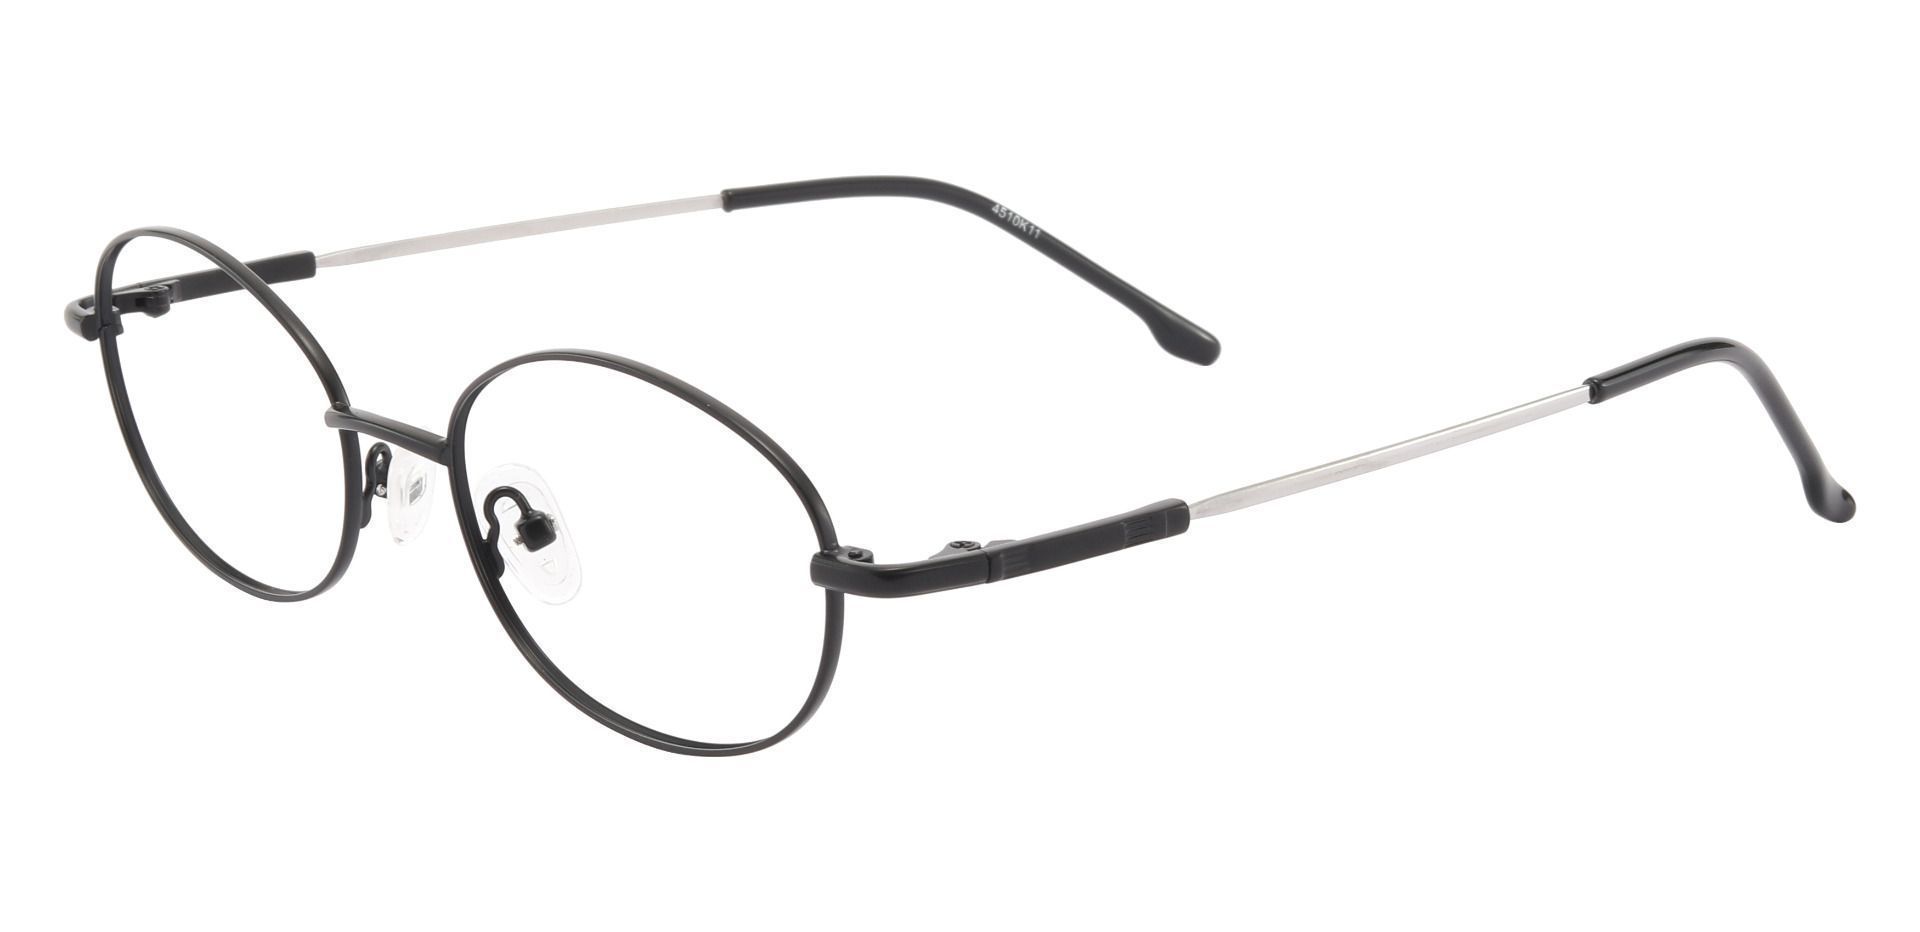 Calera Oval Prescription Glasses - Black